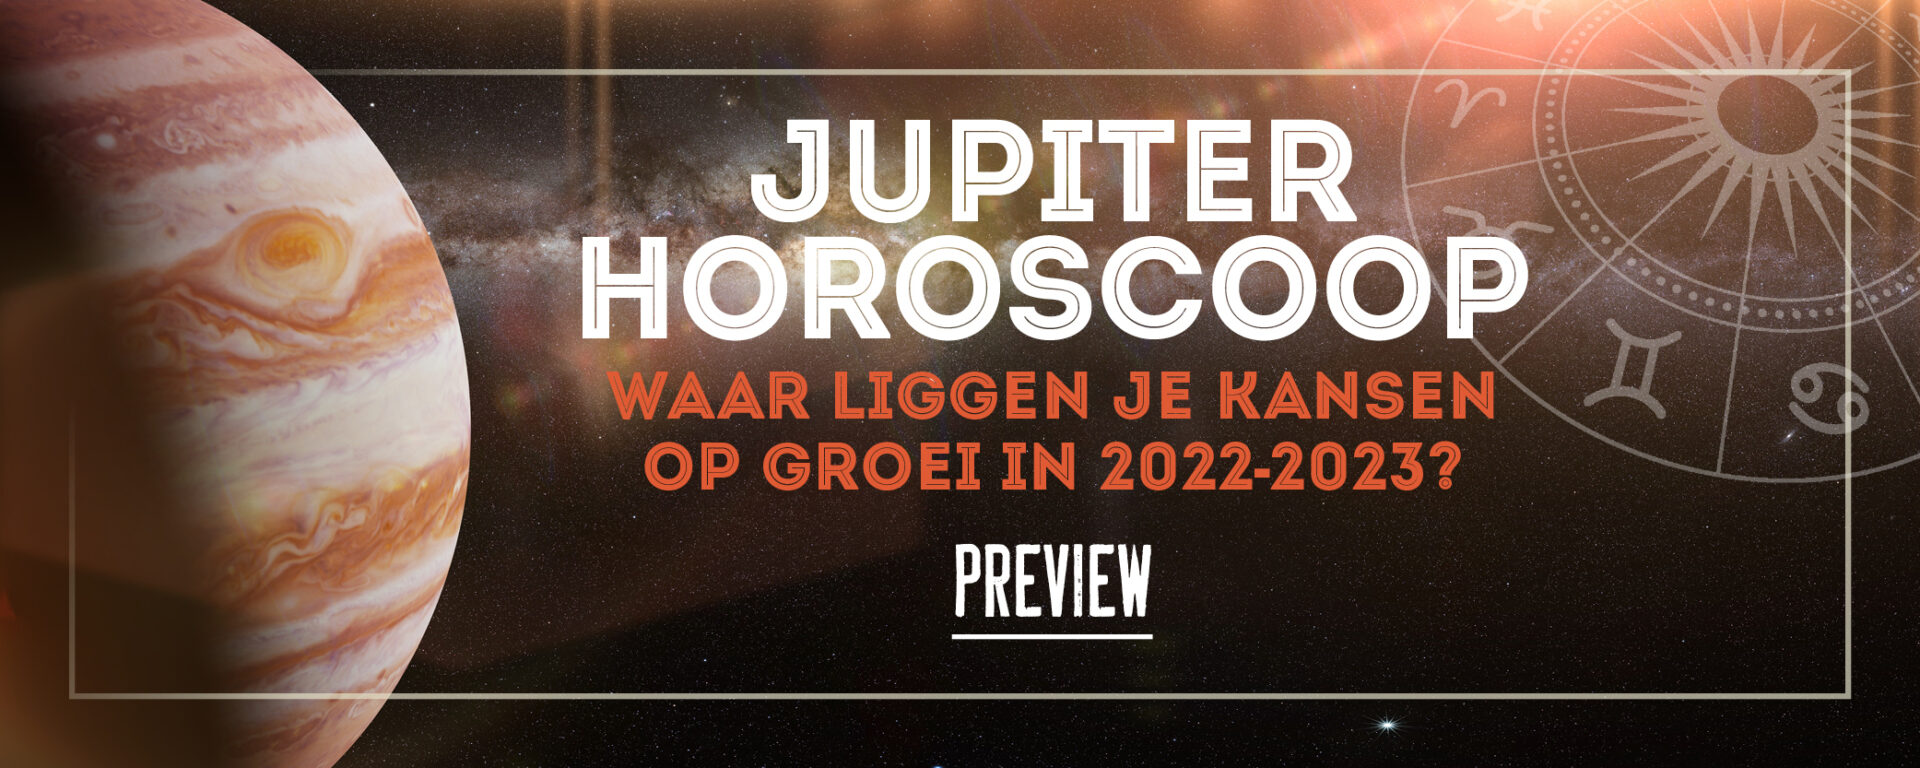 PREVIEW// Jupiter Horoscoop 2022-2023: waar liggen je kansen op groei en financieel succes?